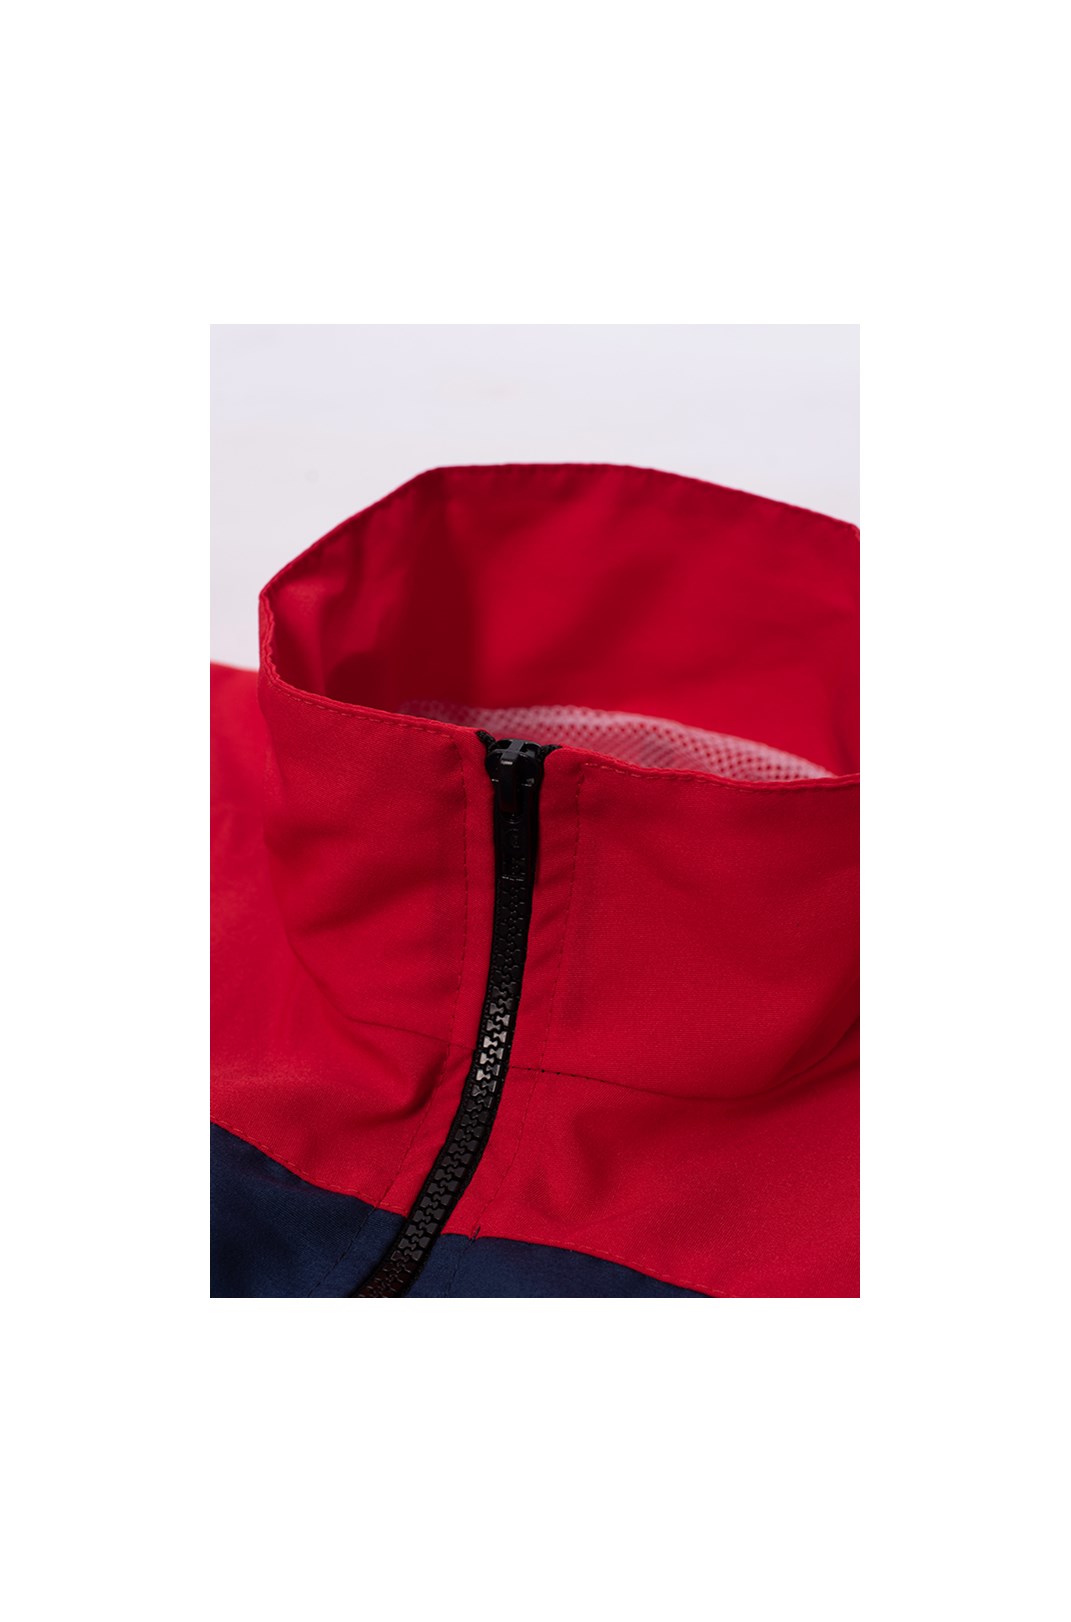 Corta Vento Anorak Approve Big Logo Vermelho e Azul Marinho